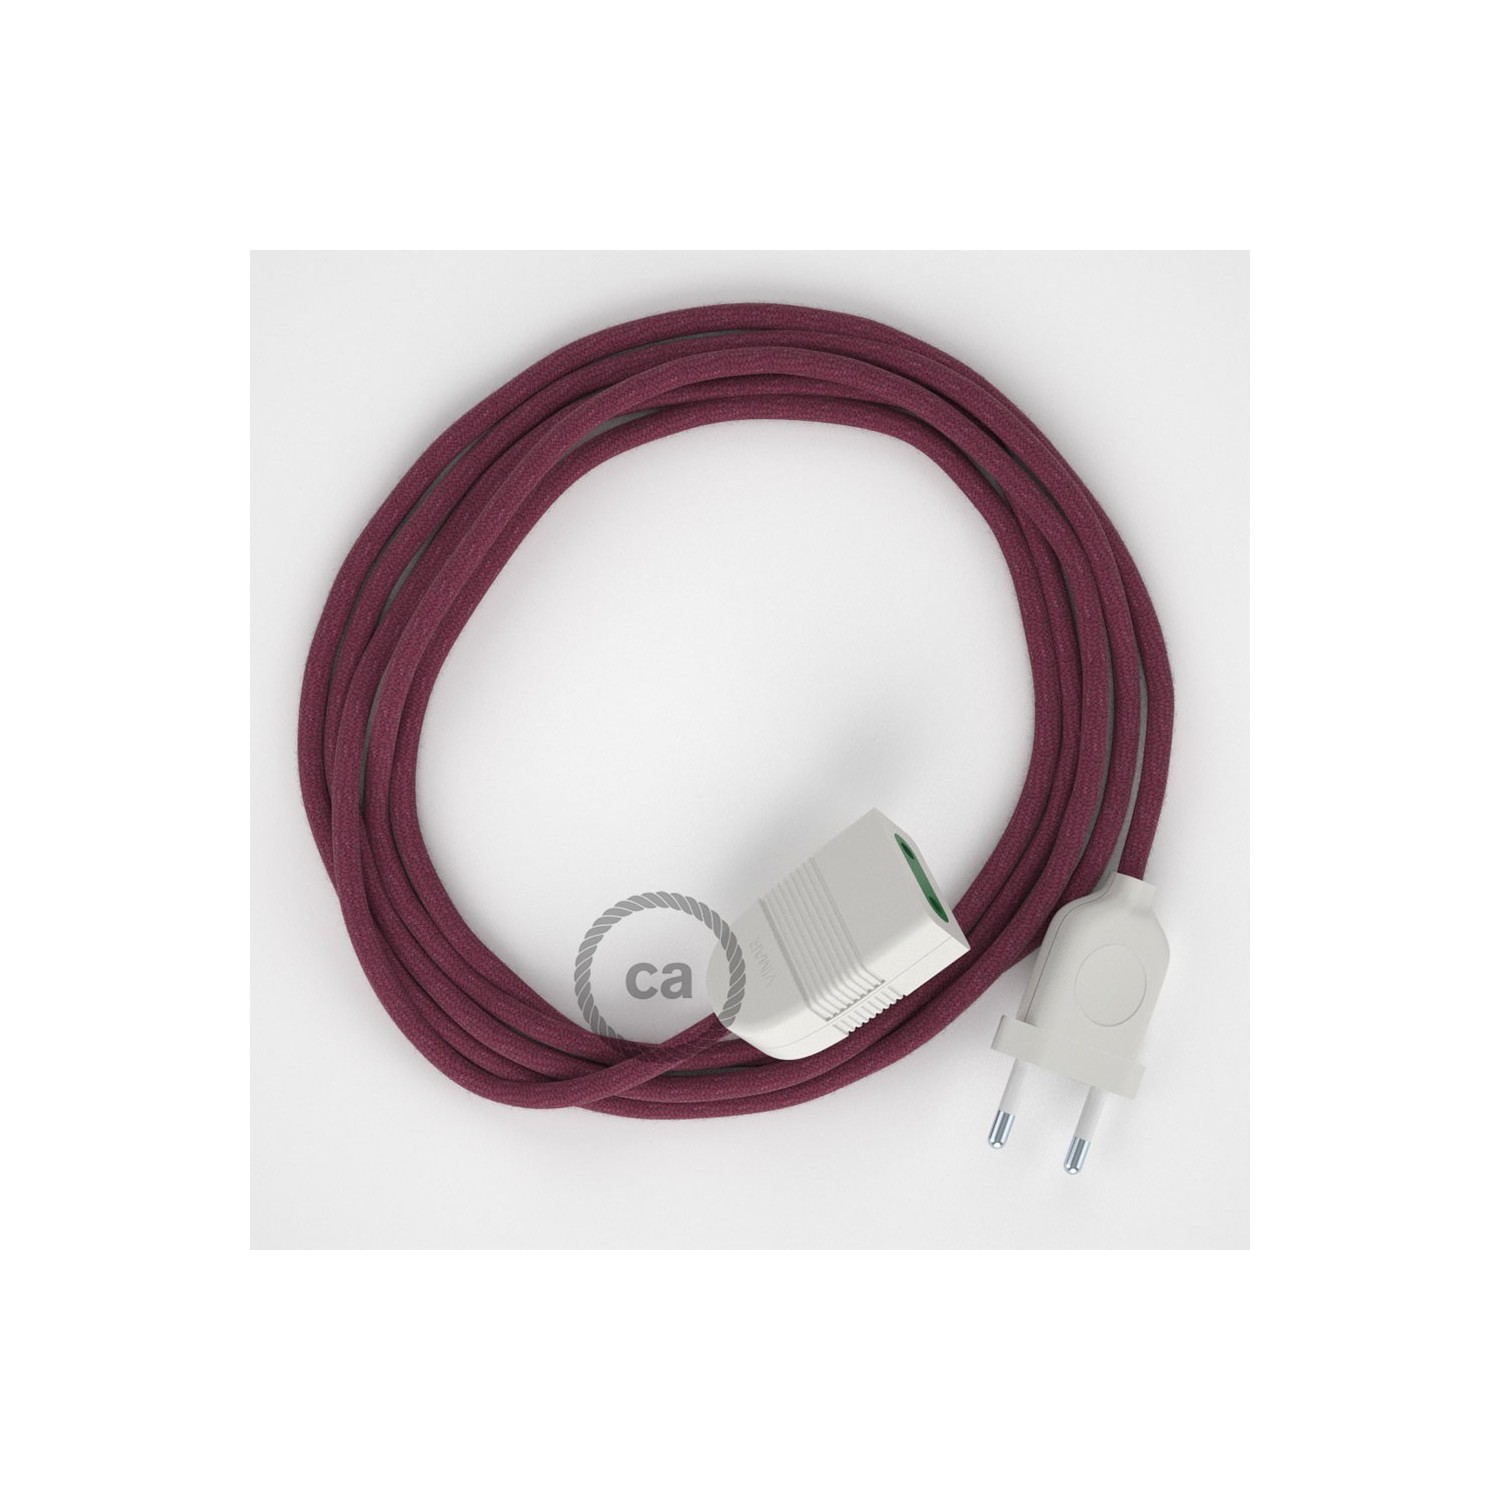 Produžni kabel za napajanje (2P 10A) Bordo Pamuk RC32 - Made in Italy